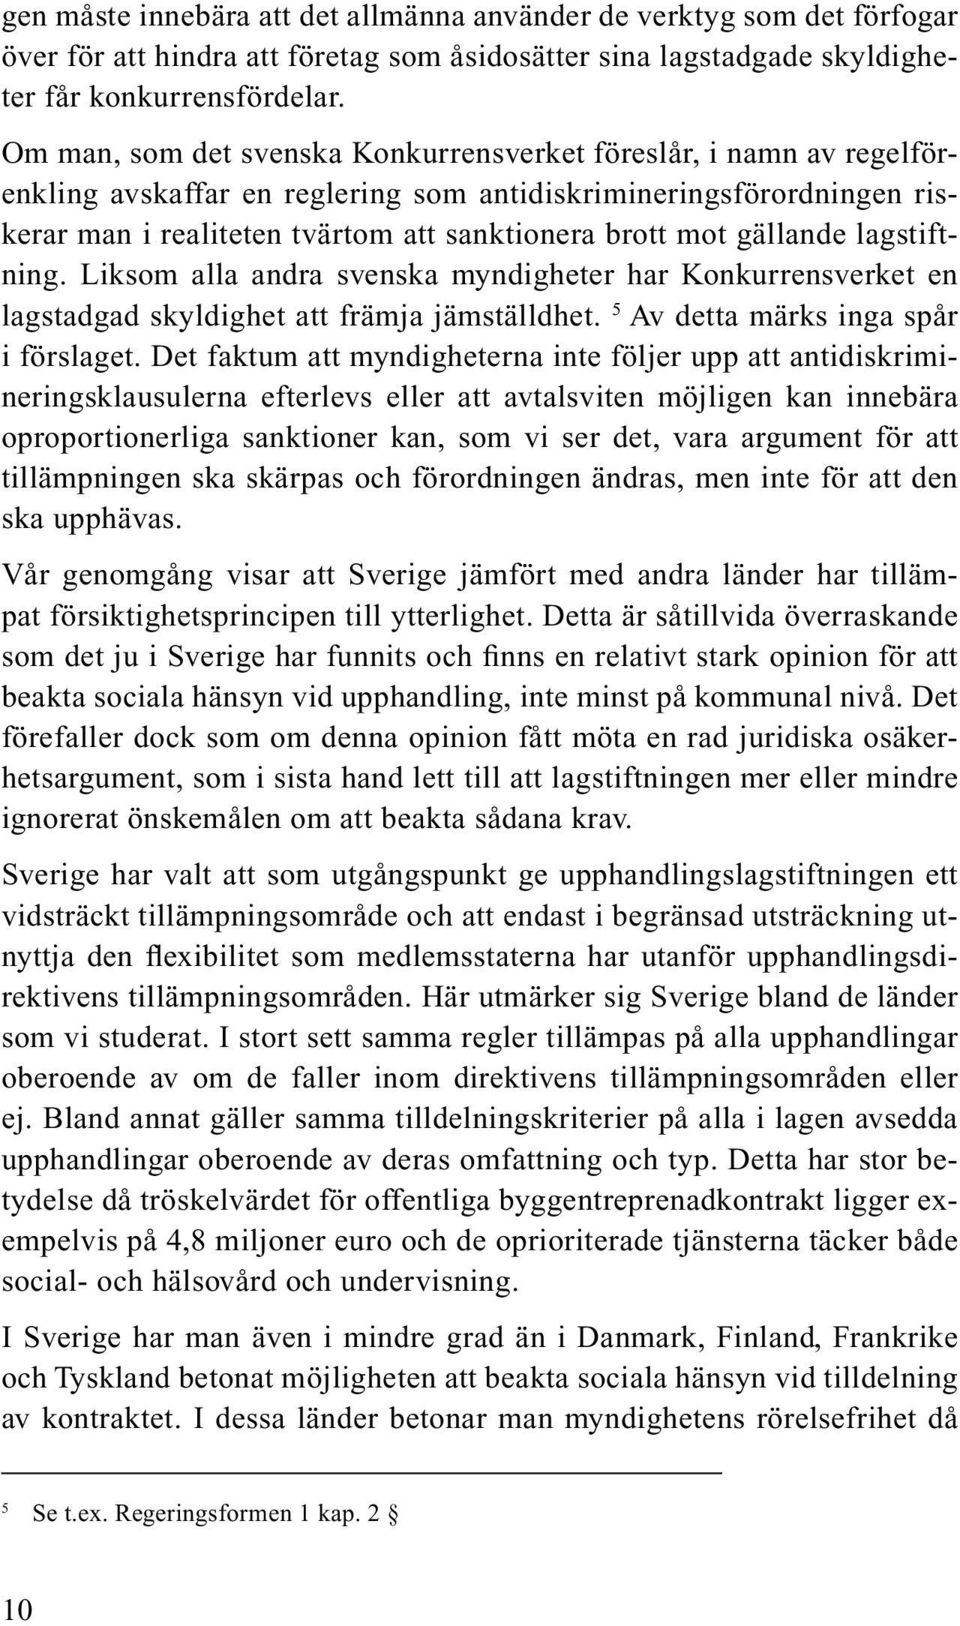 gällande lagstiftning. Liksom alla andra svenska myndigheter har Konkurrensverket en lagstadgad skyldighet att främja jämställdhet. 5 Av detta märks inga spår i förslaget.